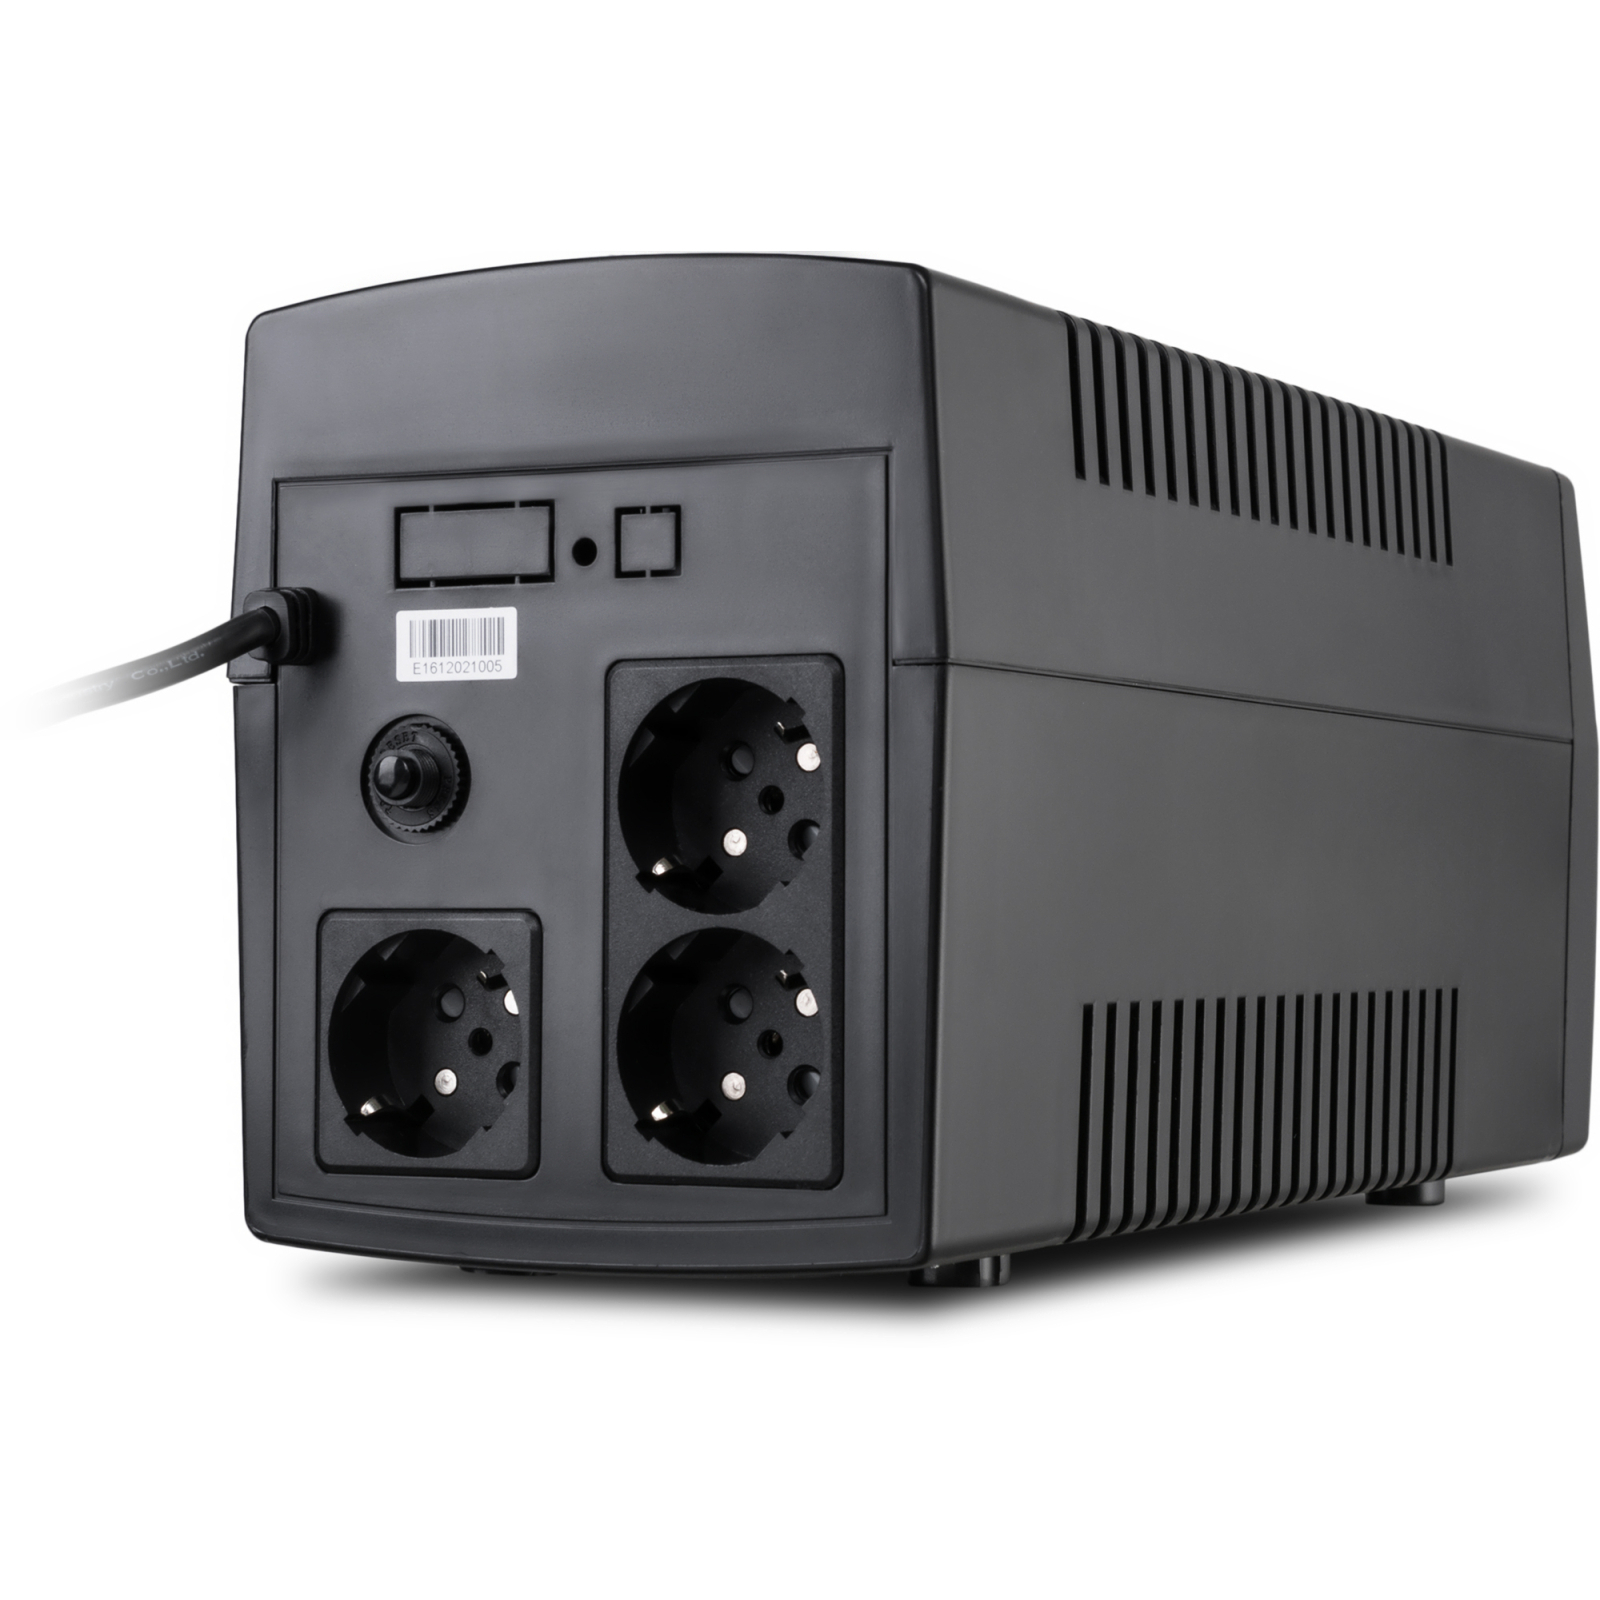 Пристрій безперебійного живлення Vinga LED 1200VA plastic case (VPE-1200P) зображення 3